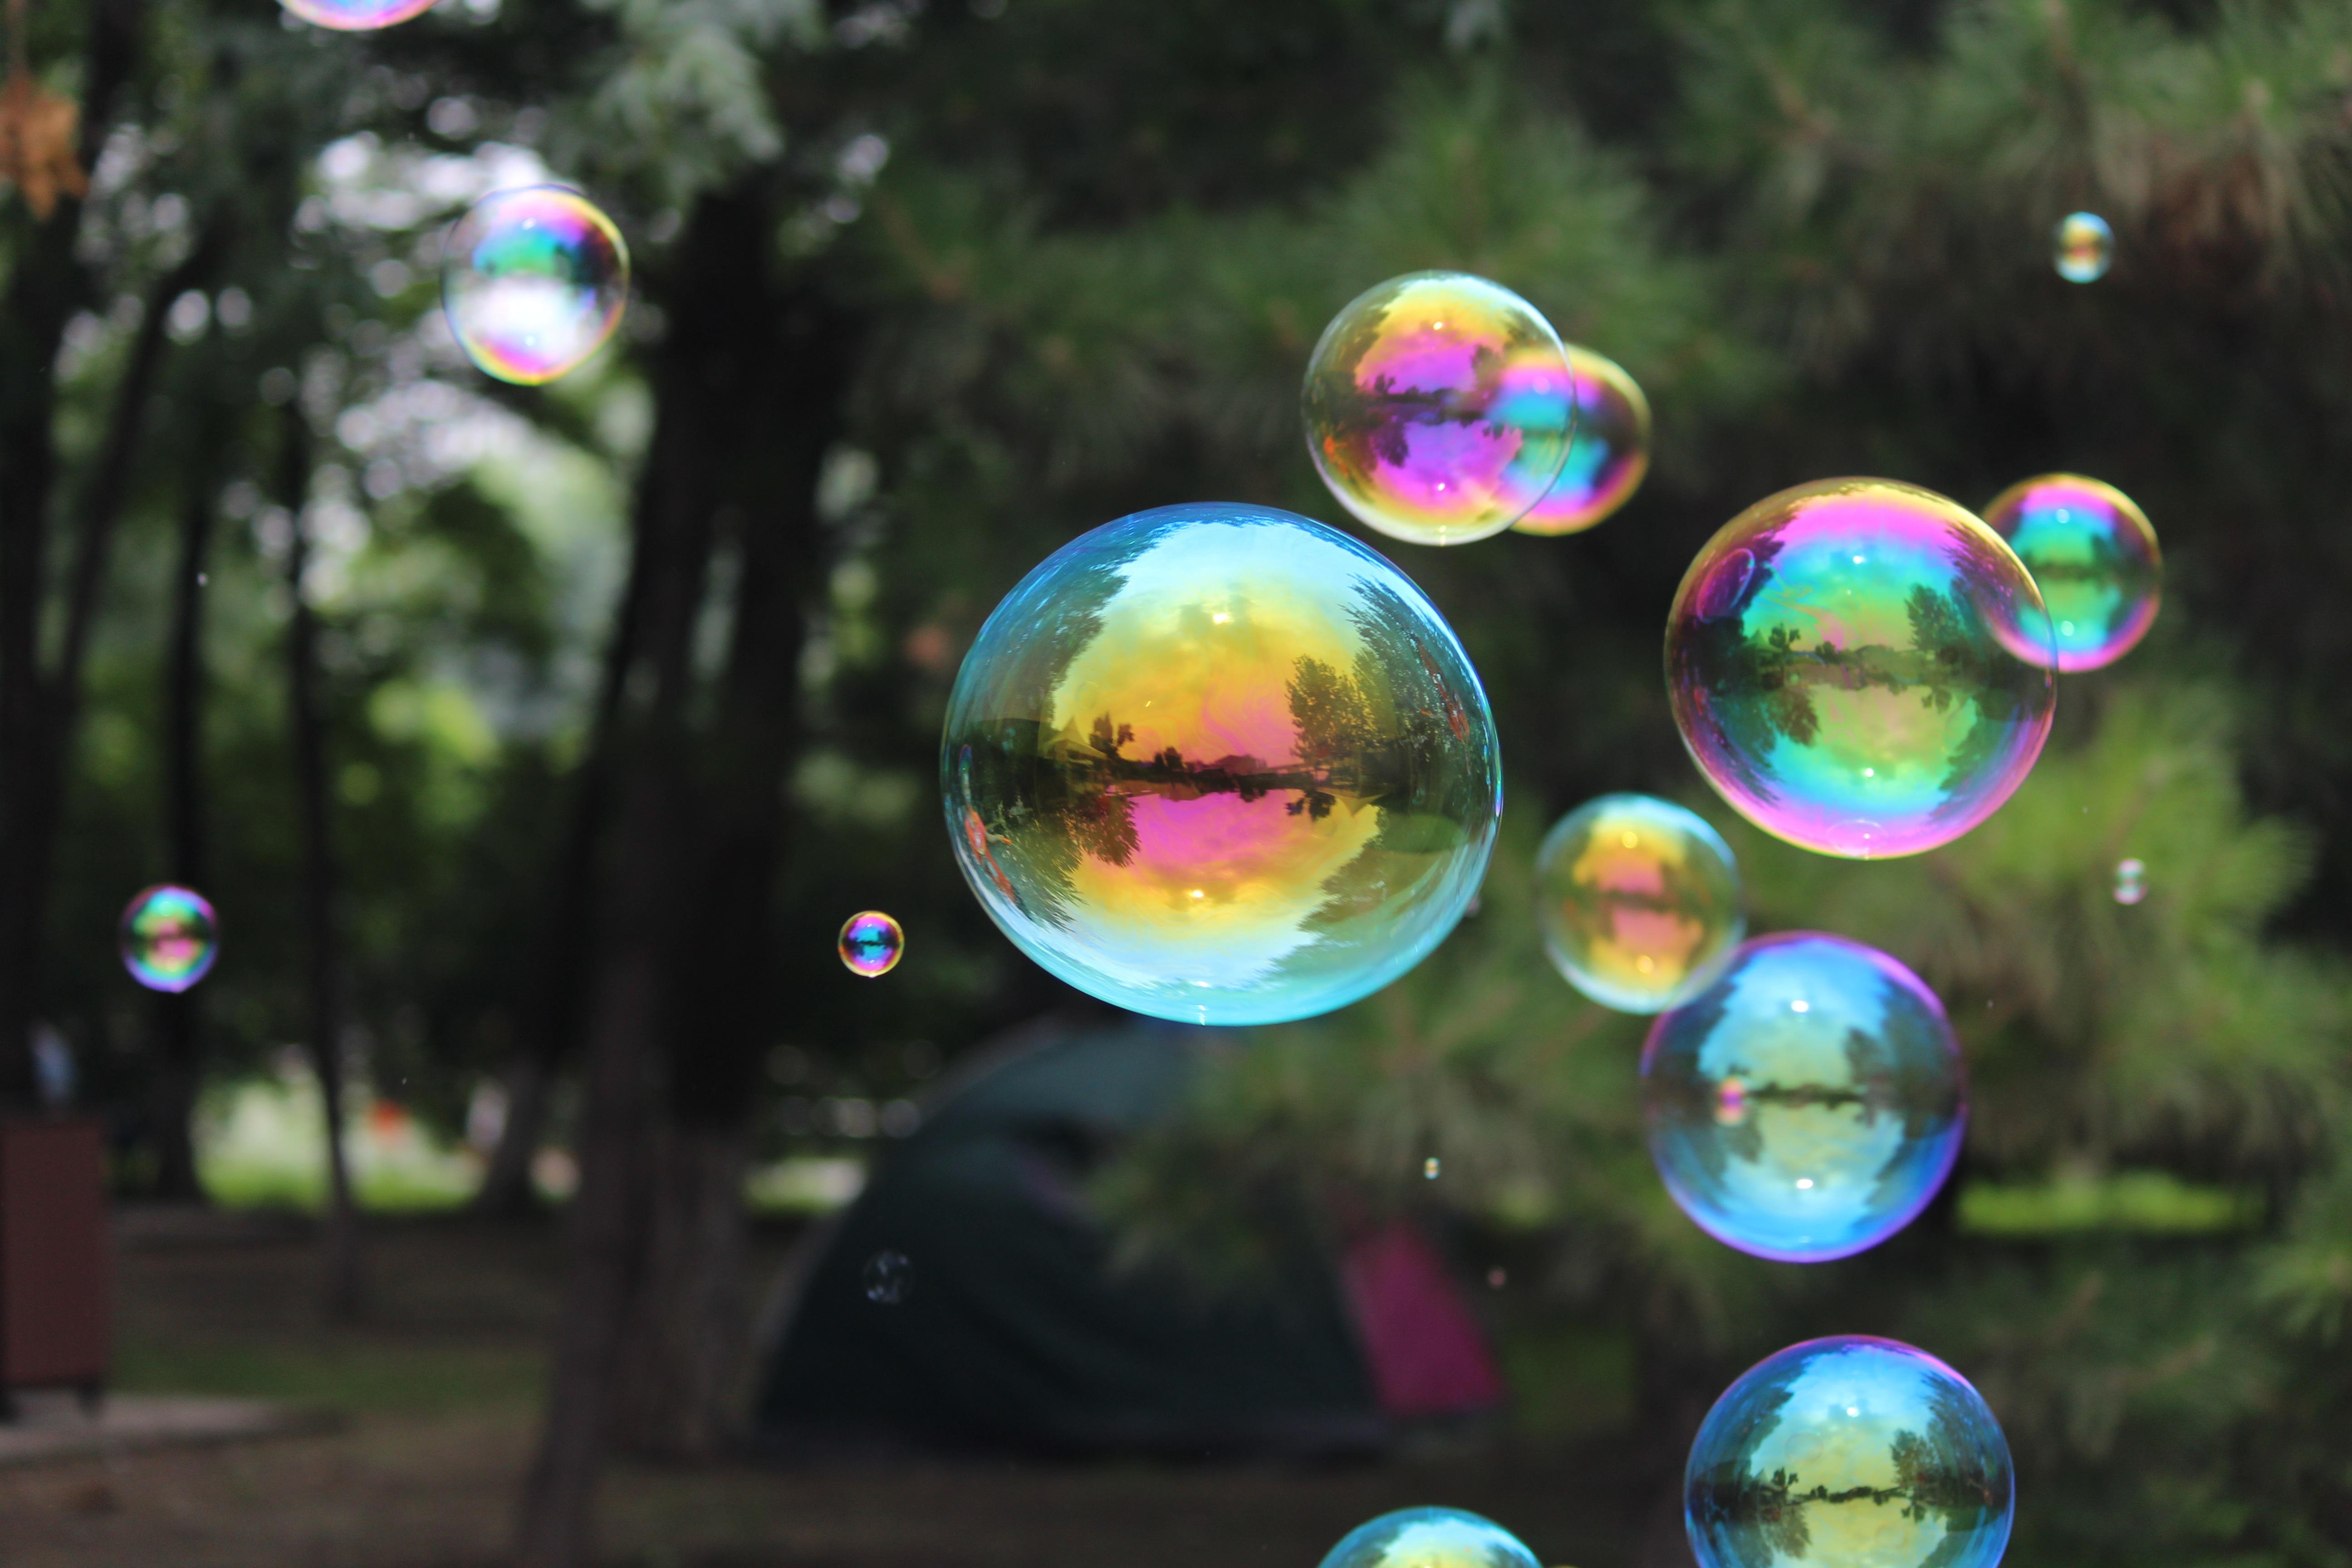 Stora såpbubblor som skimrar i regnbågens färger.